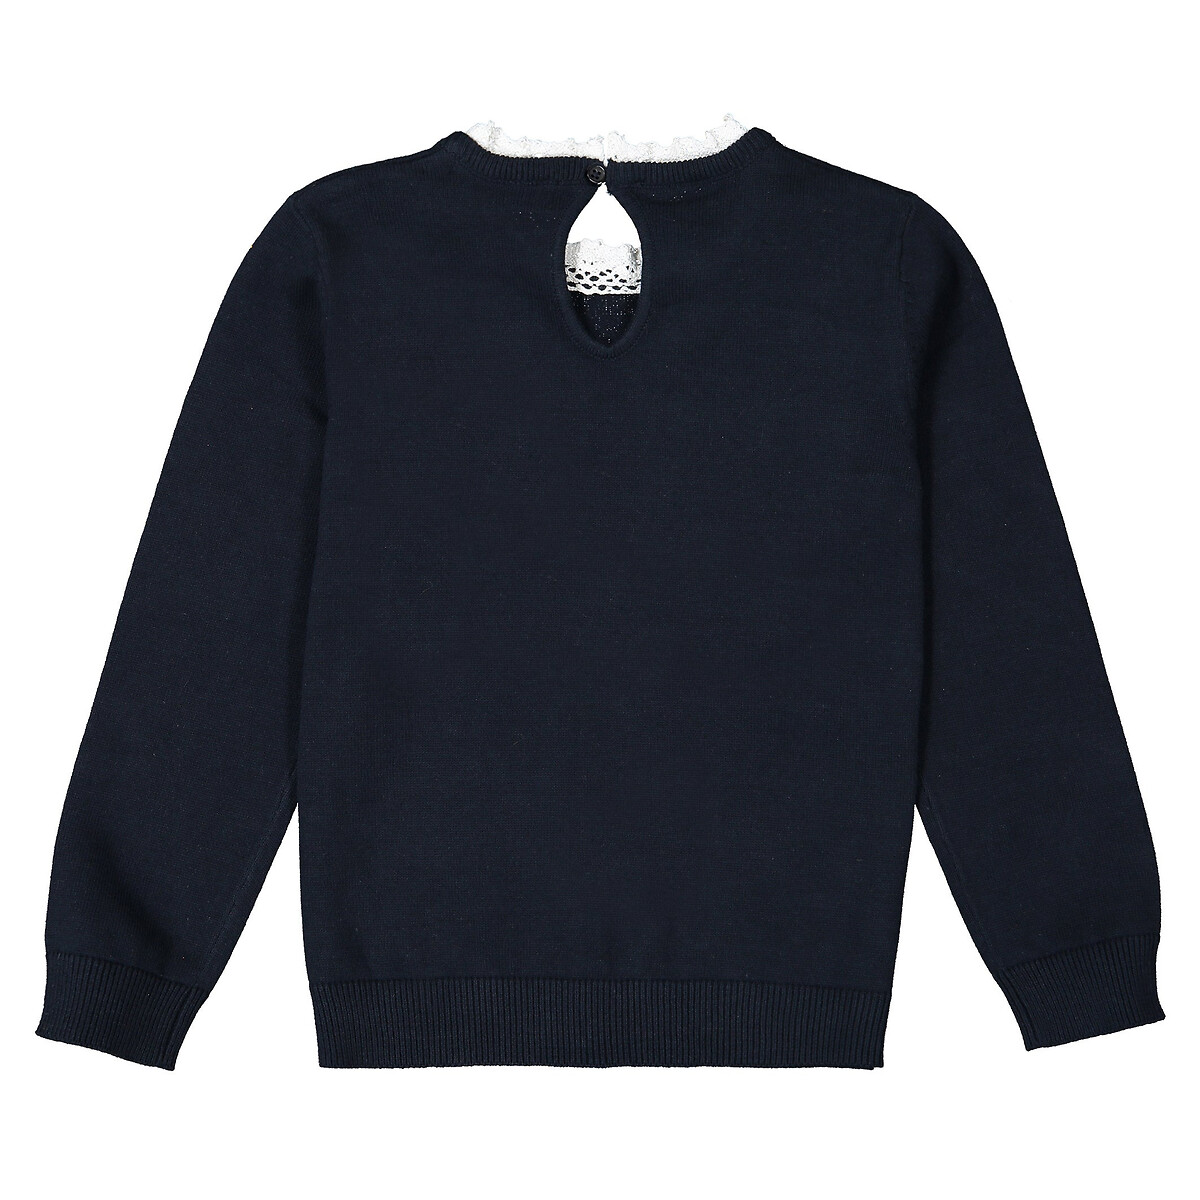 Пуловер La Redoute С эффектом  в  воротник связан крючком  4 года - 102 см синий, размер 4 года - 102 см - фото 3